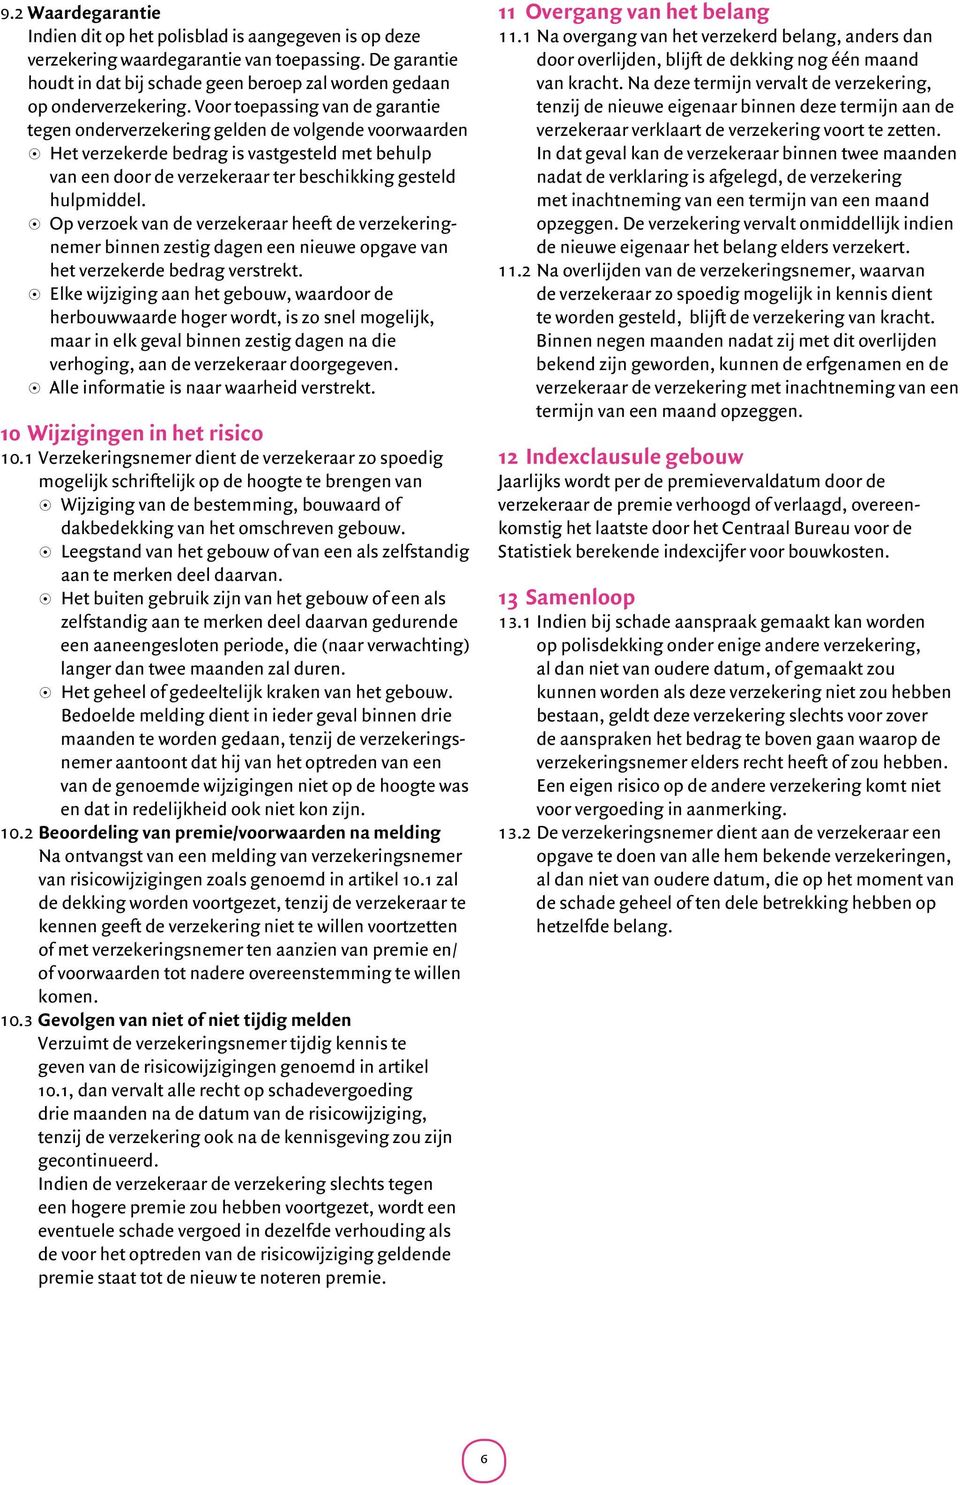 Voor toepassing van de garantie tegen onderverzekering gelden de volgende voorwaarden 8 Het verzekerde bedrag is vastgesteld met behulp van een door de verzekeraar ter beschikking gesteld hulpmiddel.